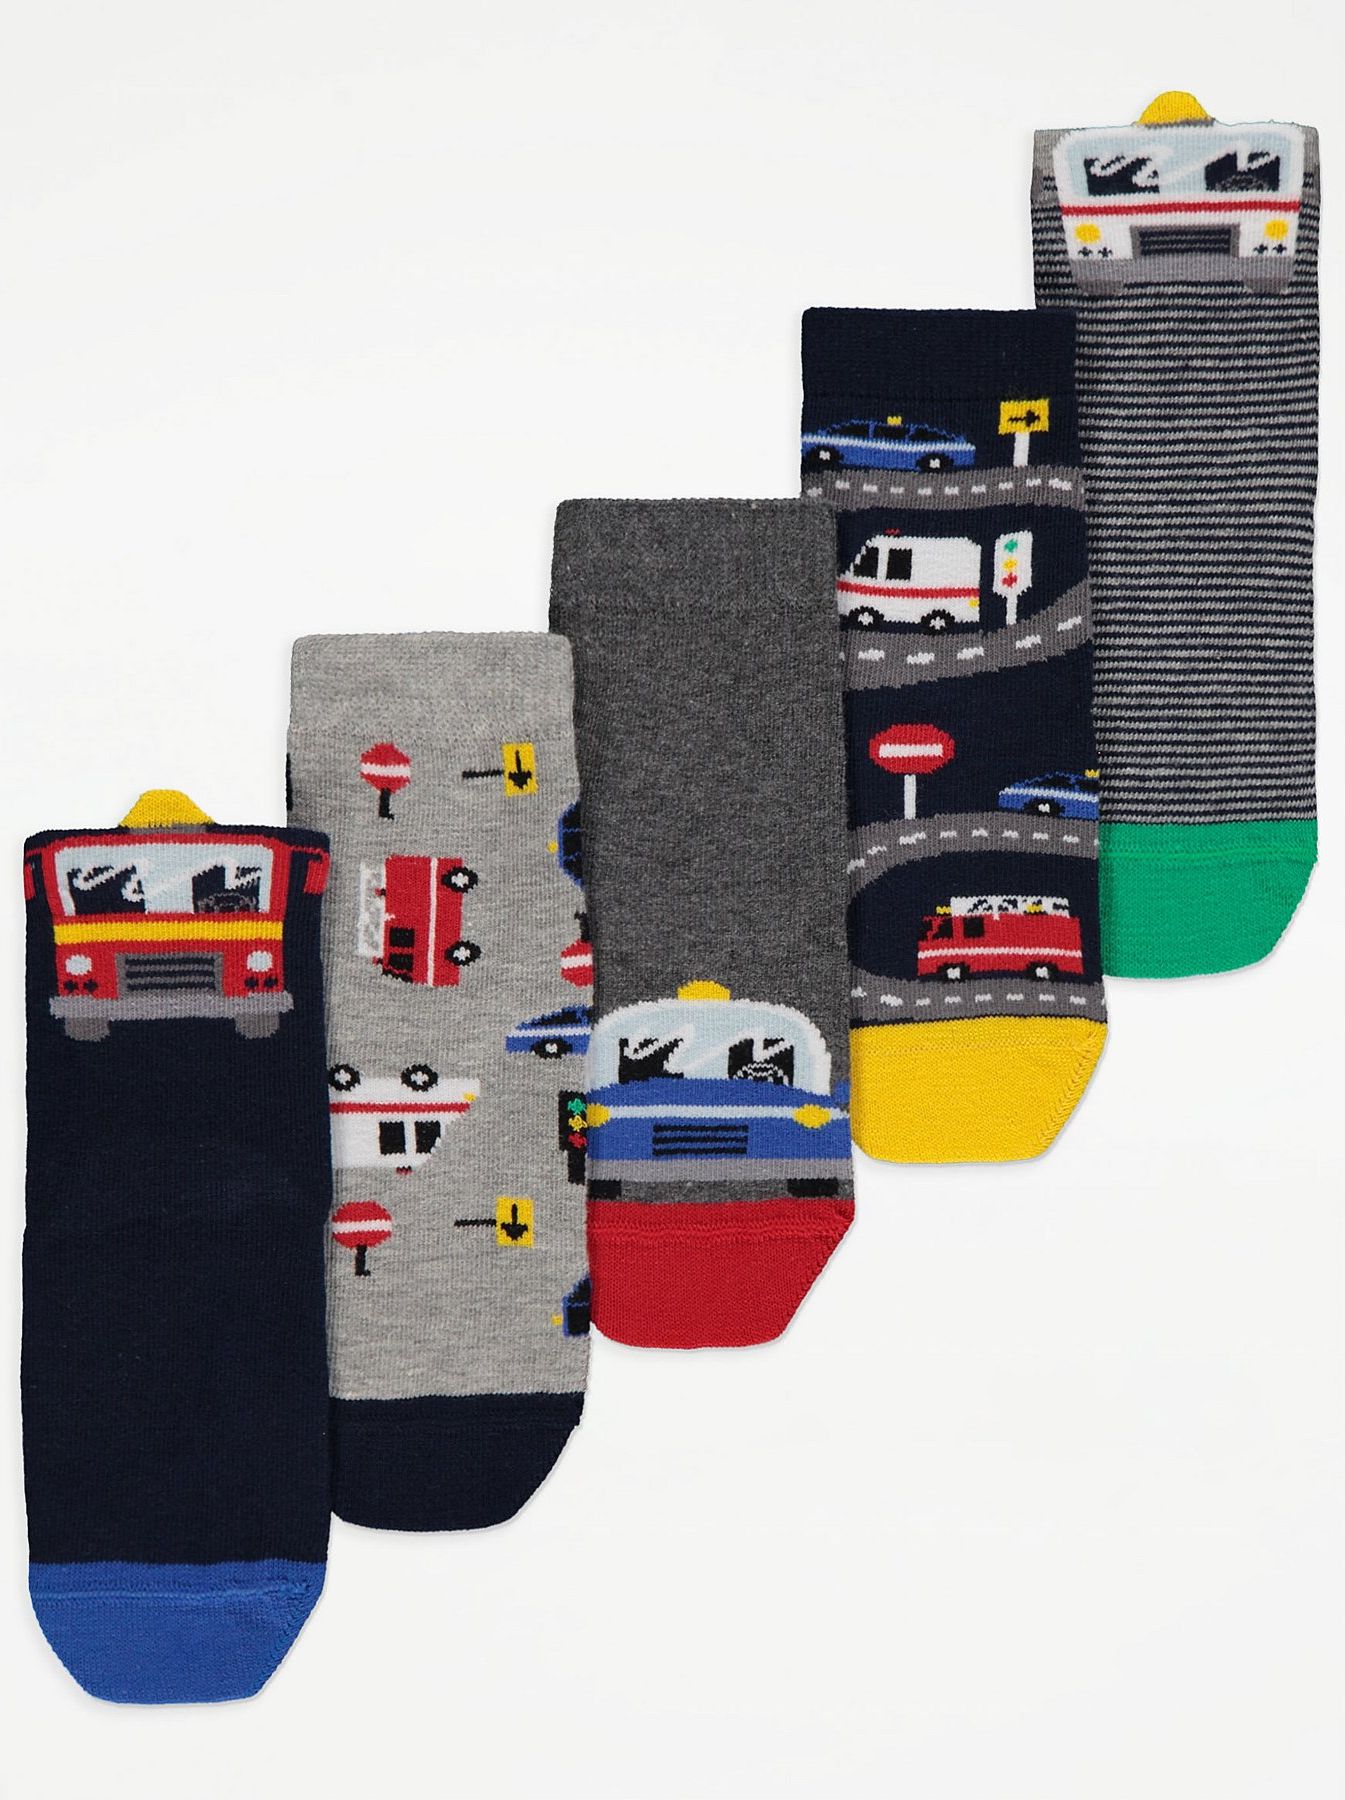 Chlapecké ponožky GEORGE, 5 ks v balení, motiv auta Velikost: EU 19 - 22.5 (1.5 - 2 roky) - obrázek 1